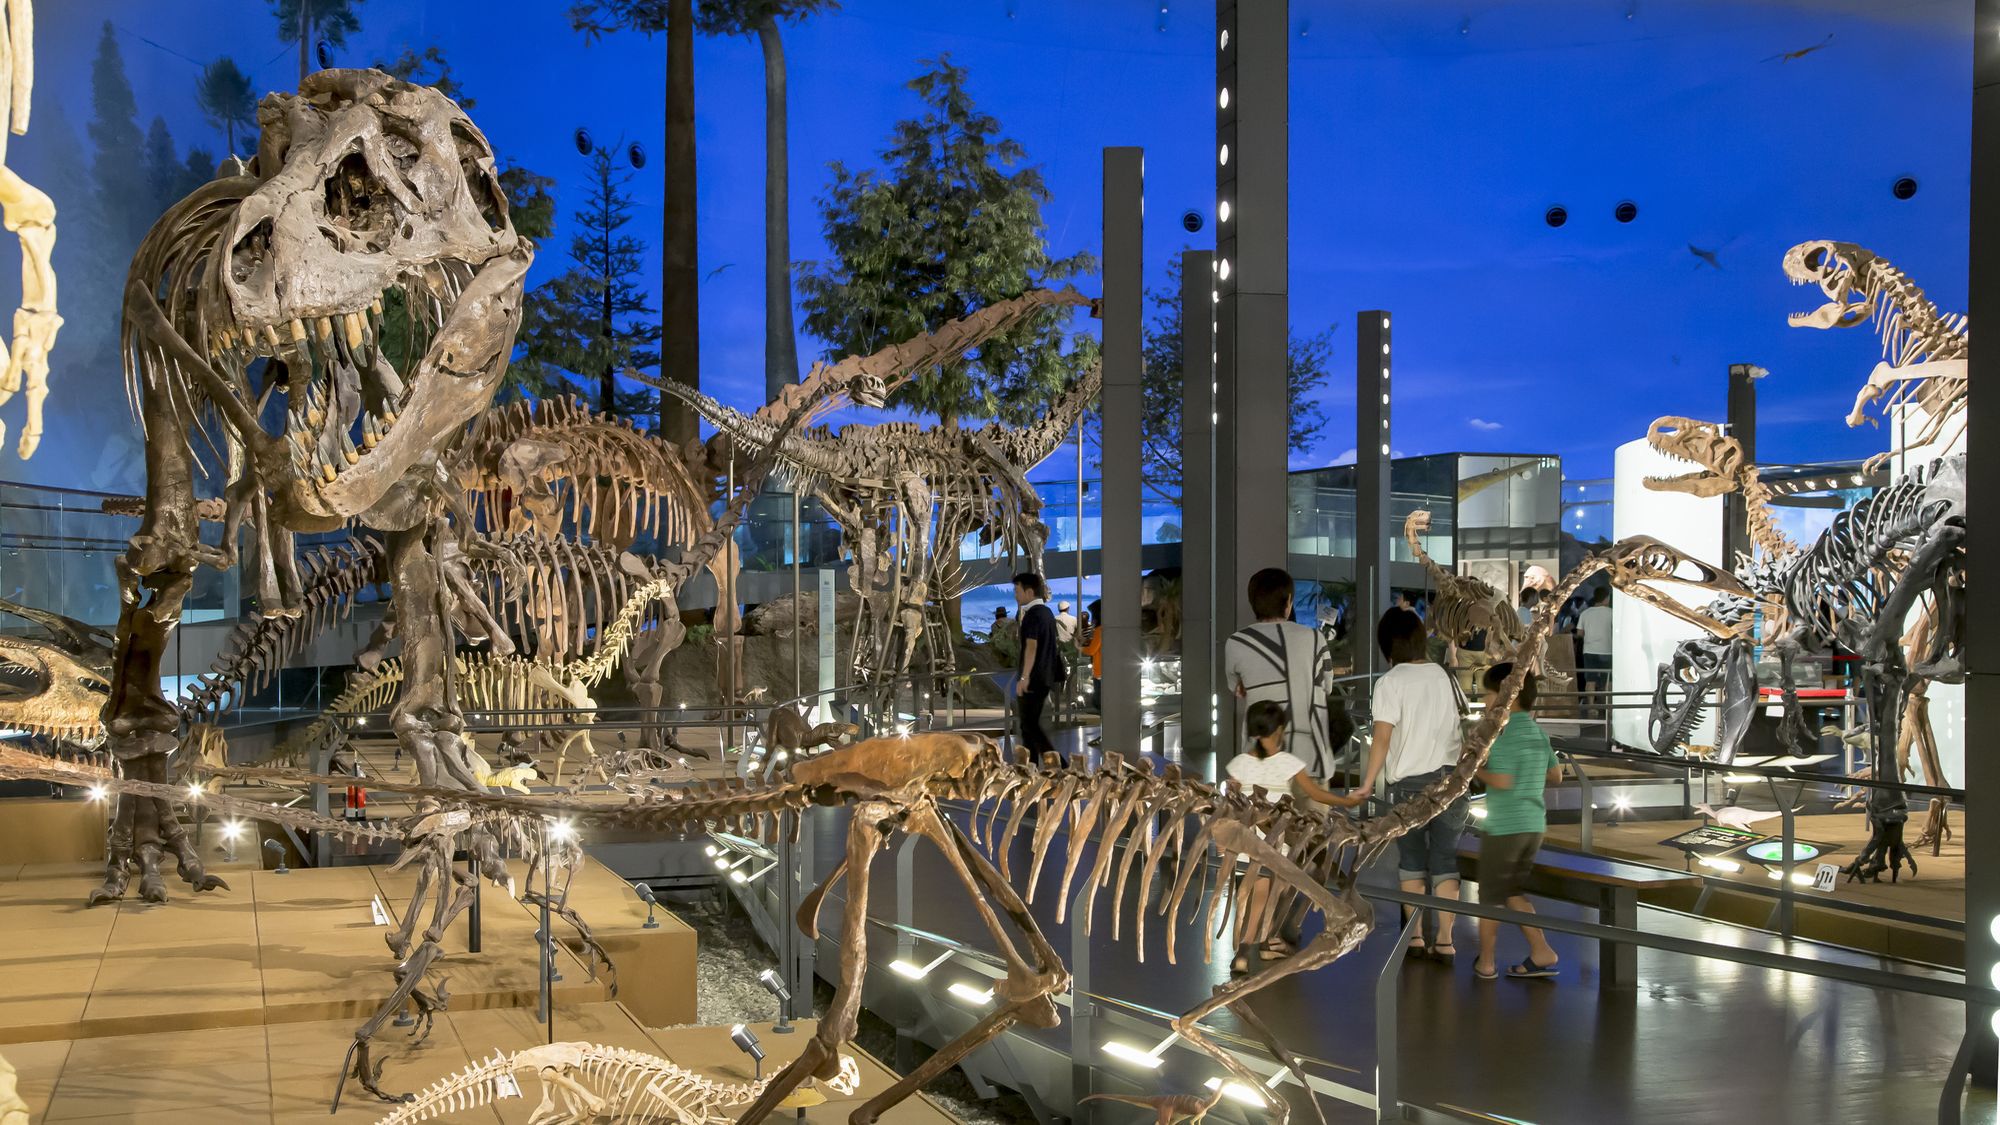 【恐竜博物館】恐竜王国福井を象徴する「福井県恐竜博物館」 